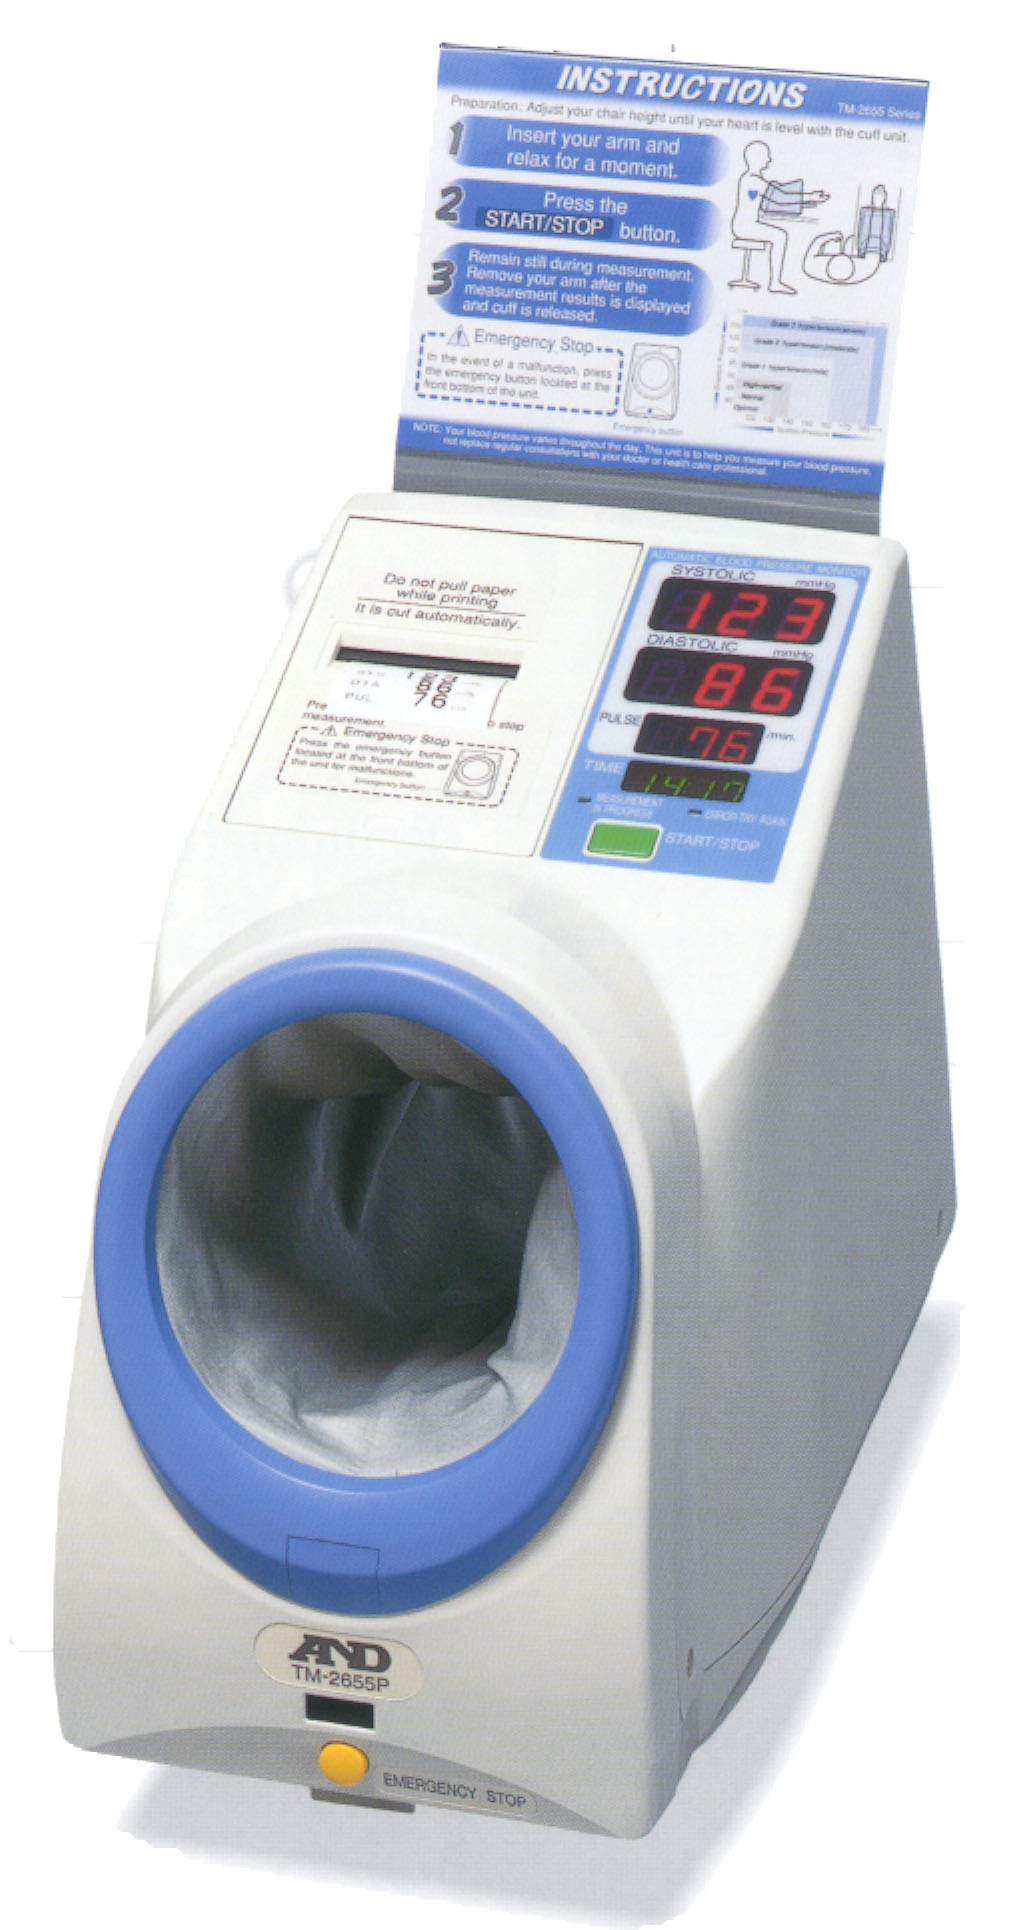 Máy đo huyết áp bắp tay tự động A&D TM-2655P